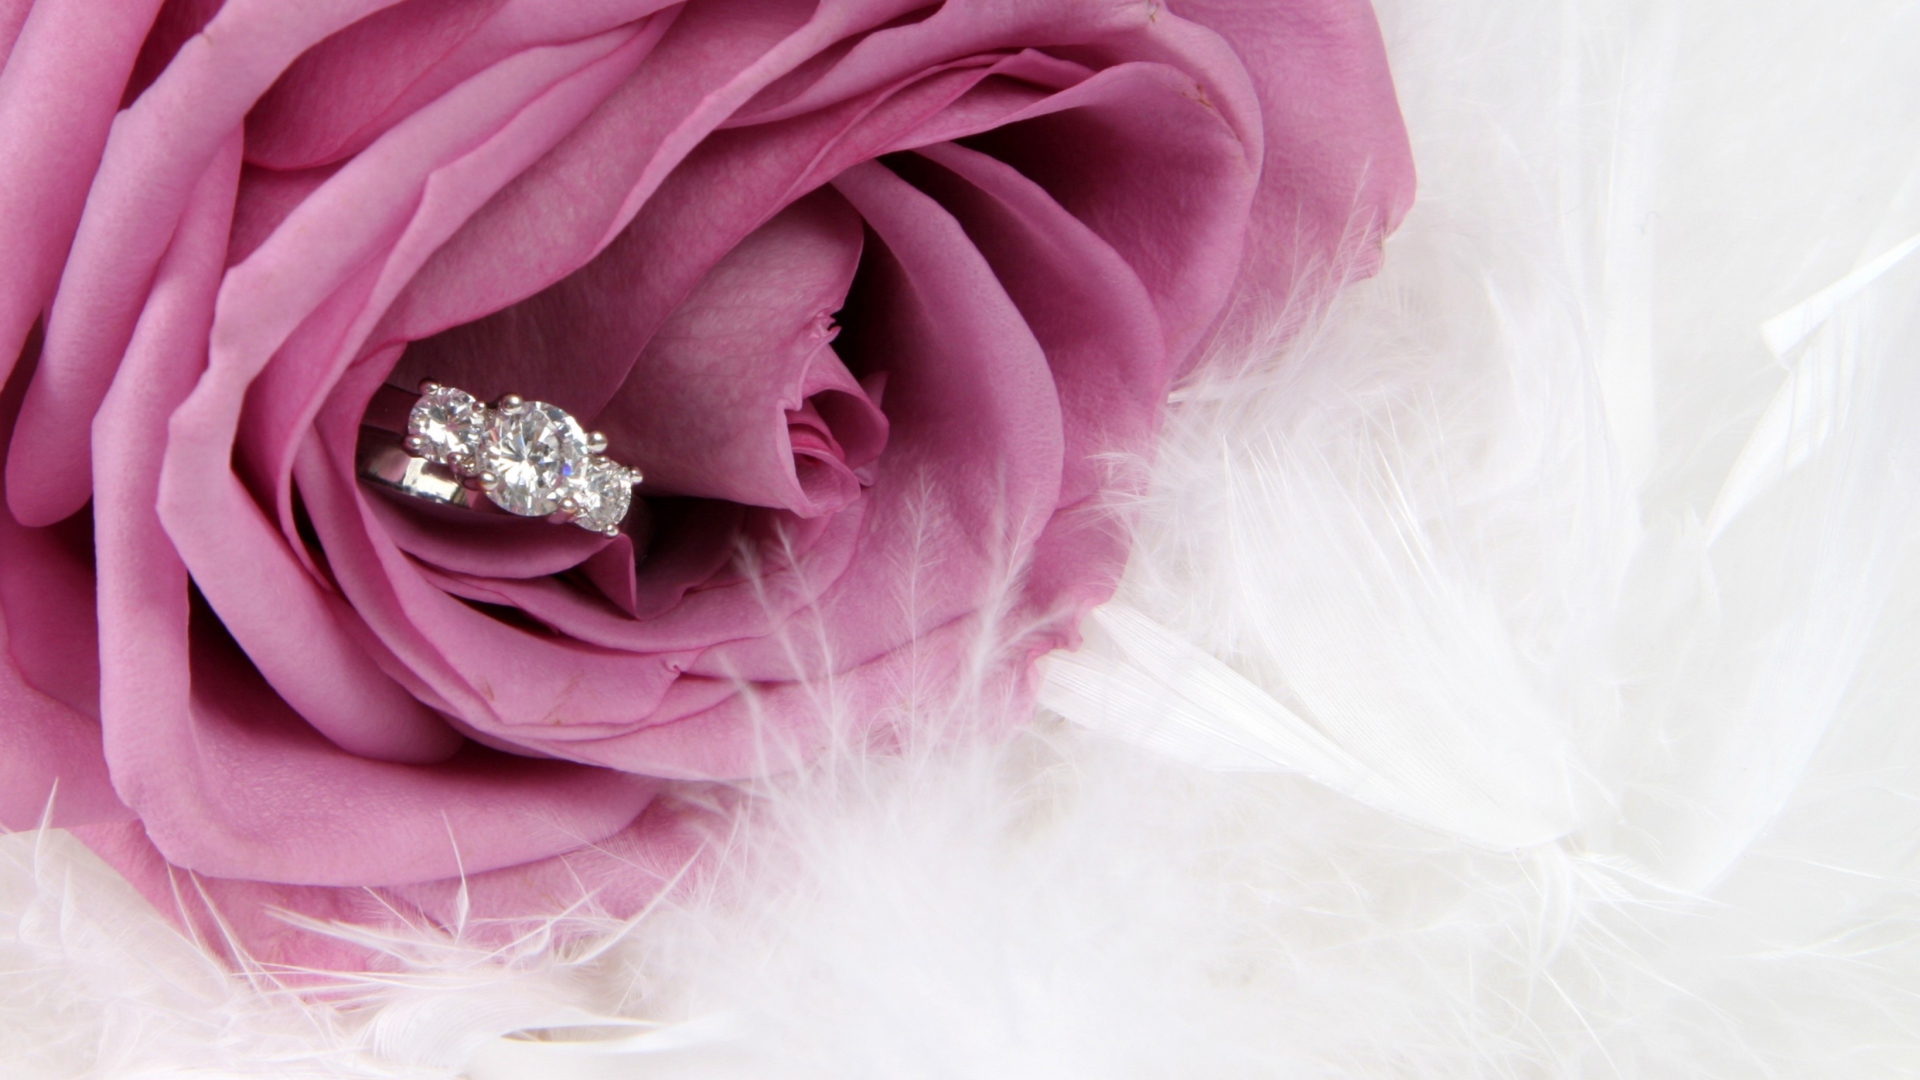 Engagement Ring In Pink Rose screenshot #1 1920x1080